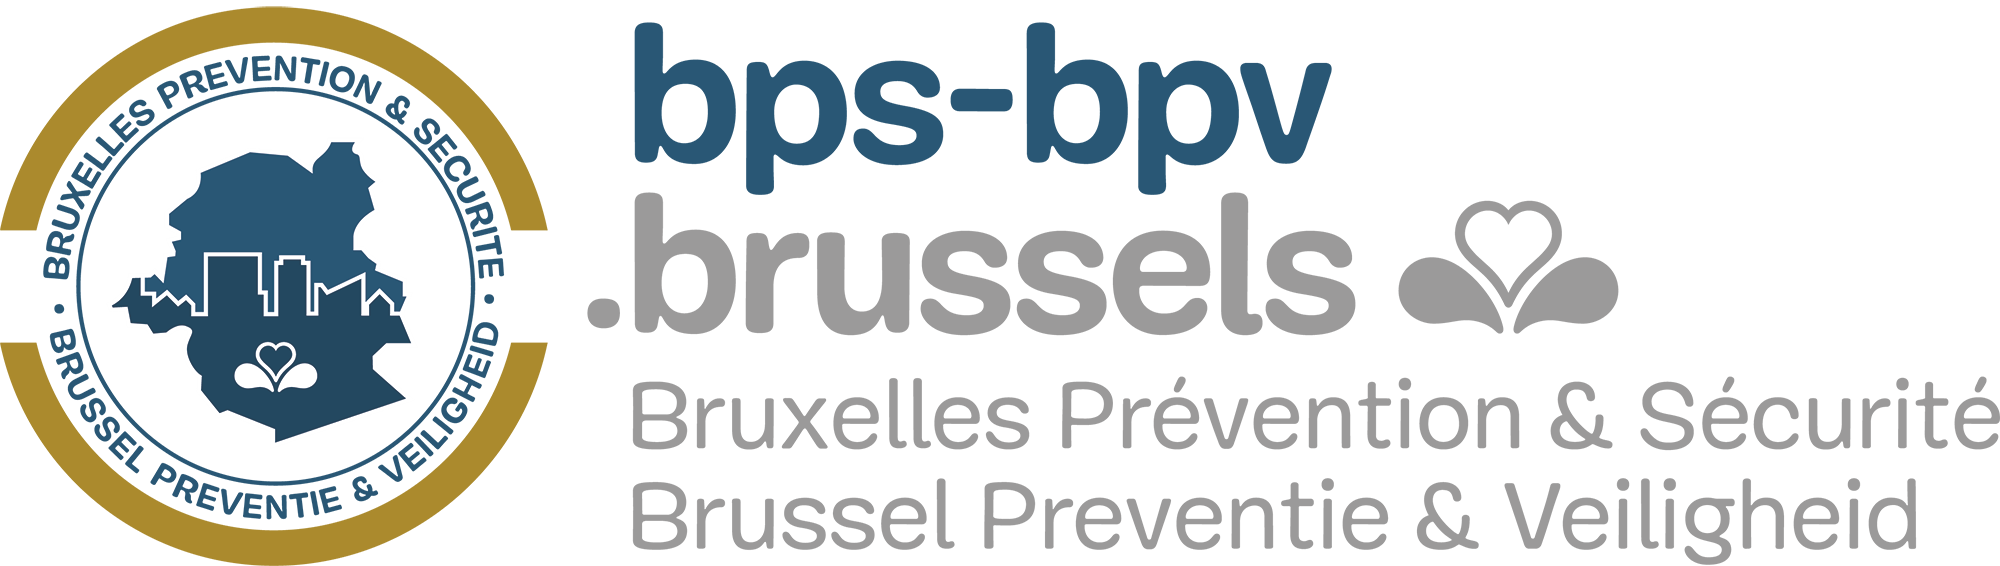 Bruxelles Prévention & Sécurité (BPS-BPV)